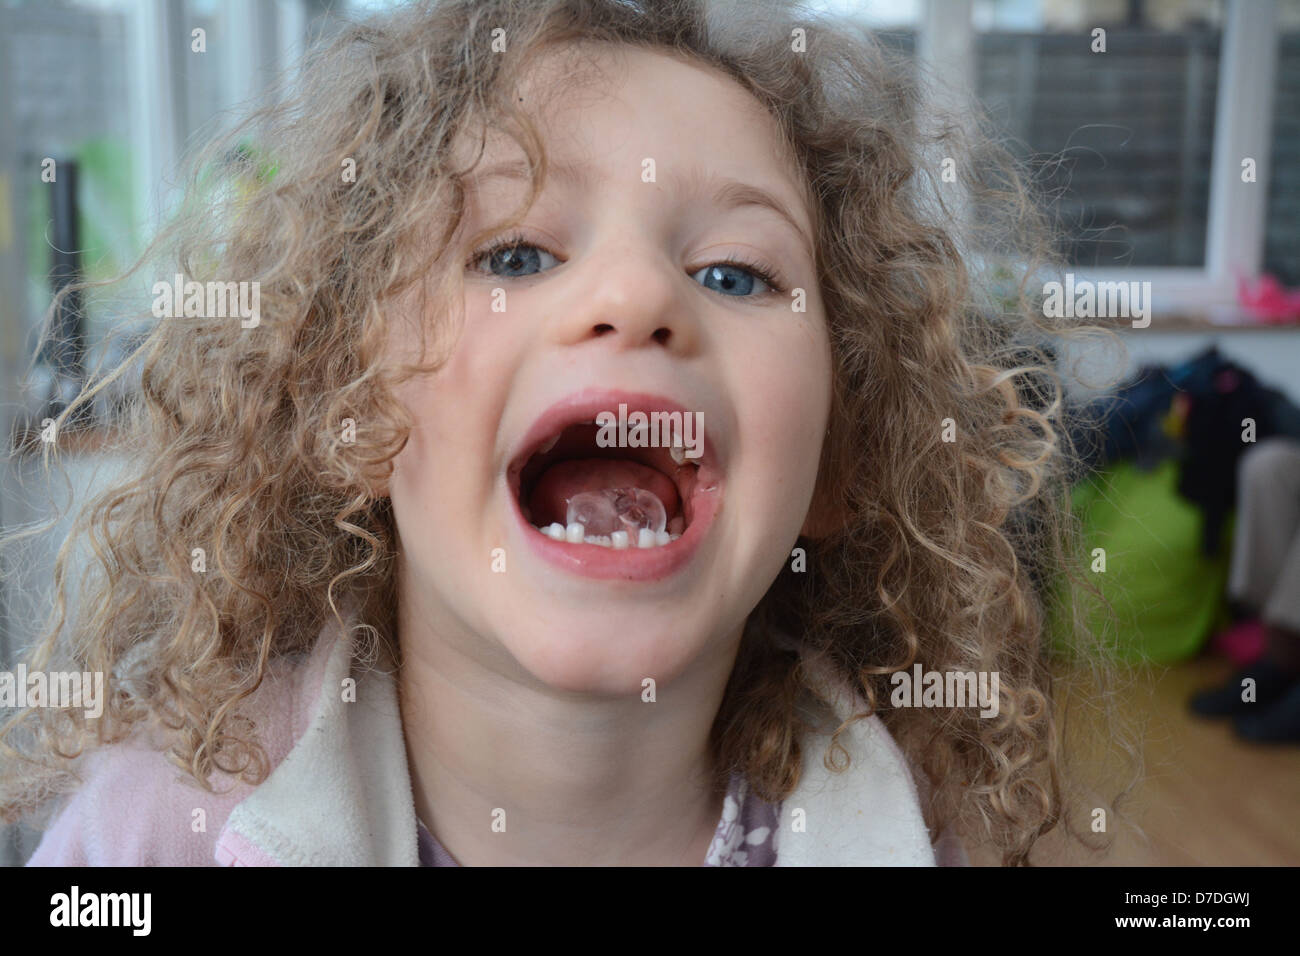 Fünf Jahre altes Mädchen mit lockigen Haaren und blauen Augen zeigen einen Eiswürfel in ihren offenen Mund Stockfoto